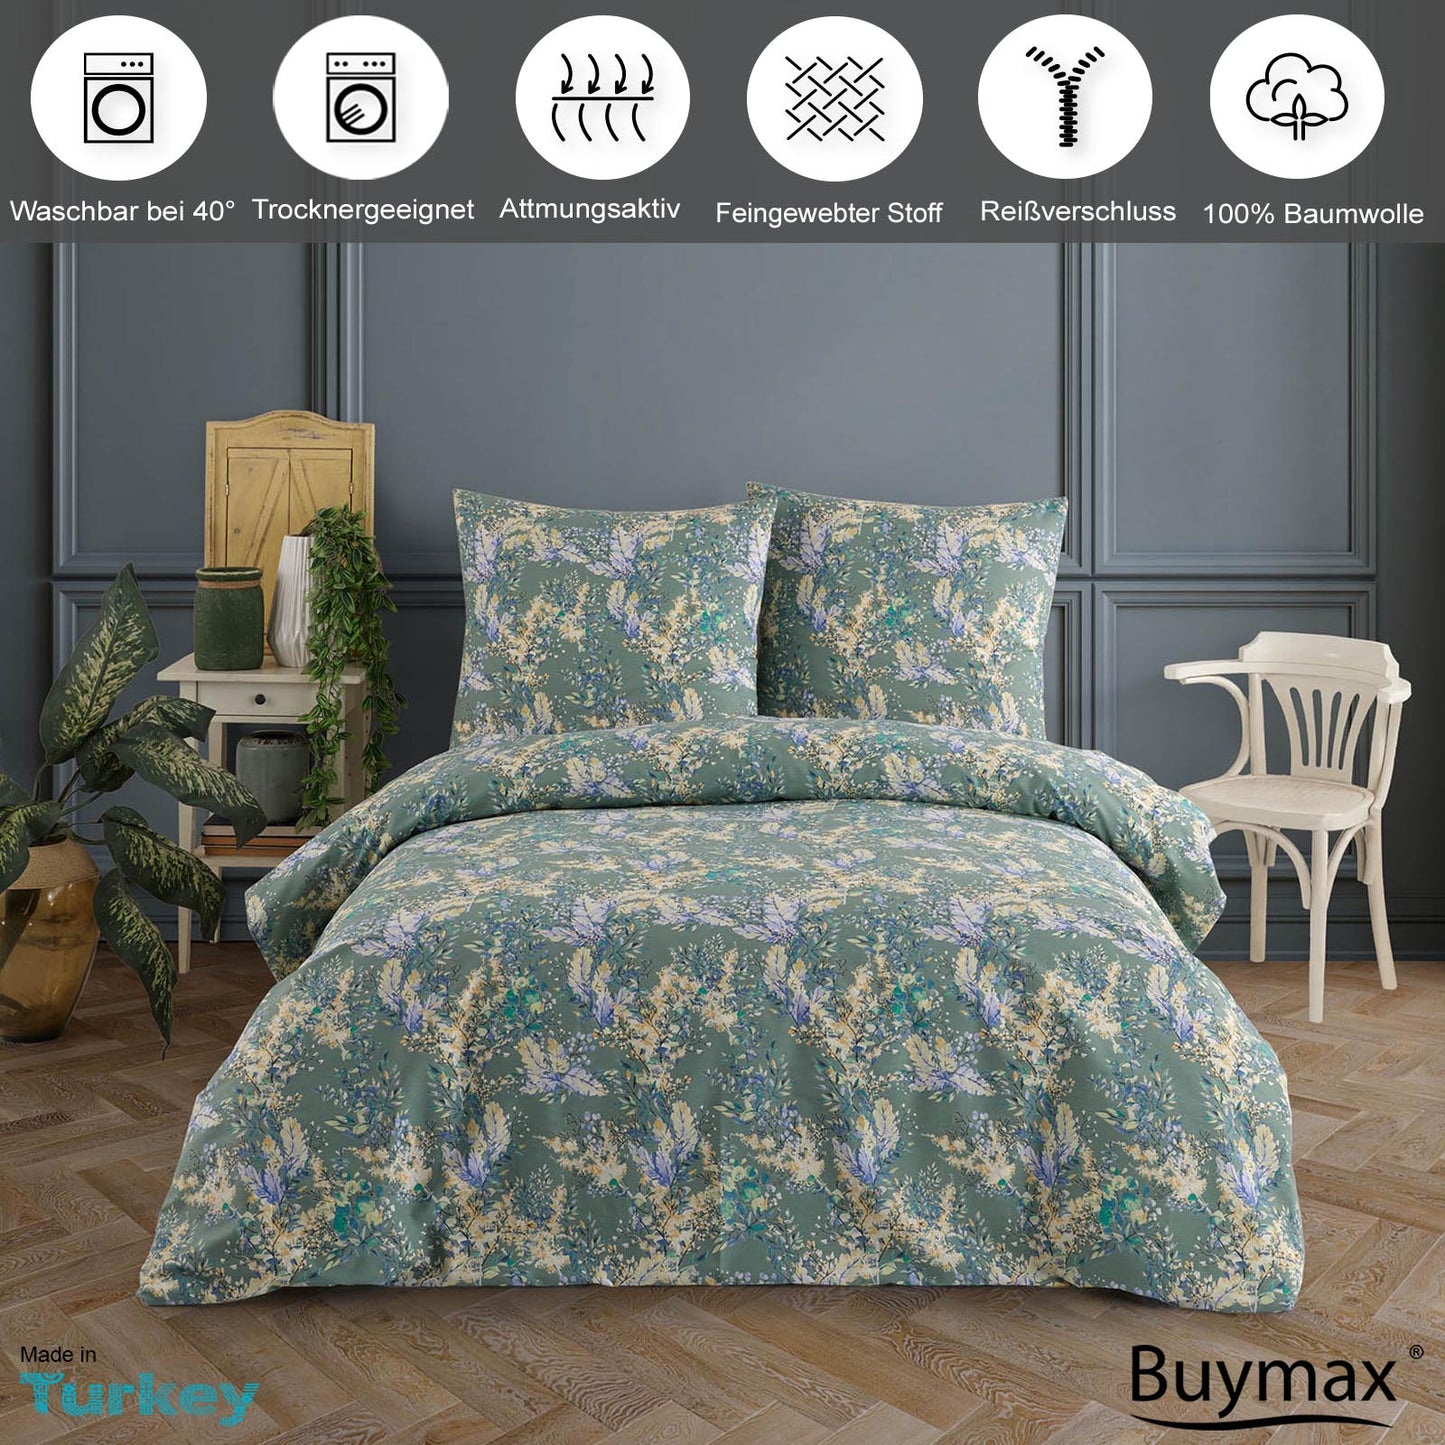 Renforce Bettwäsche, florales Design, 100% Baumwolle - Buymax